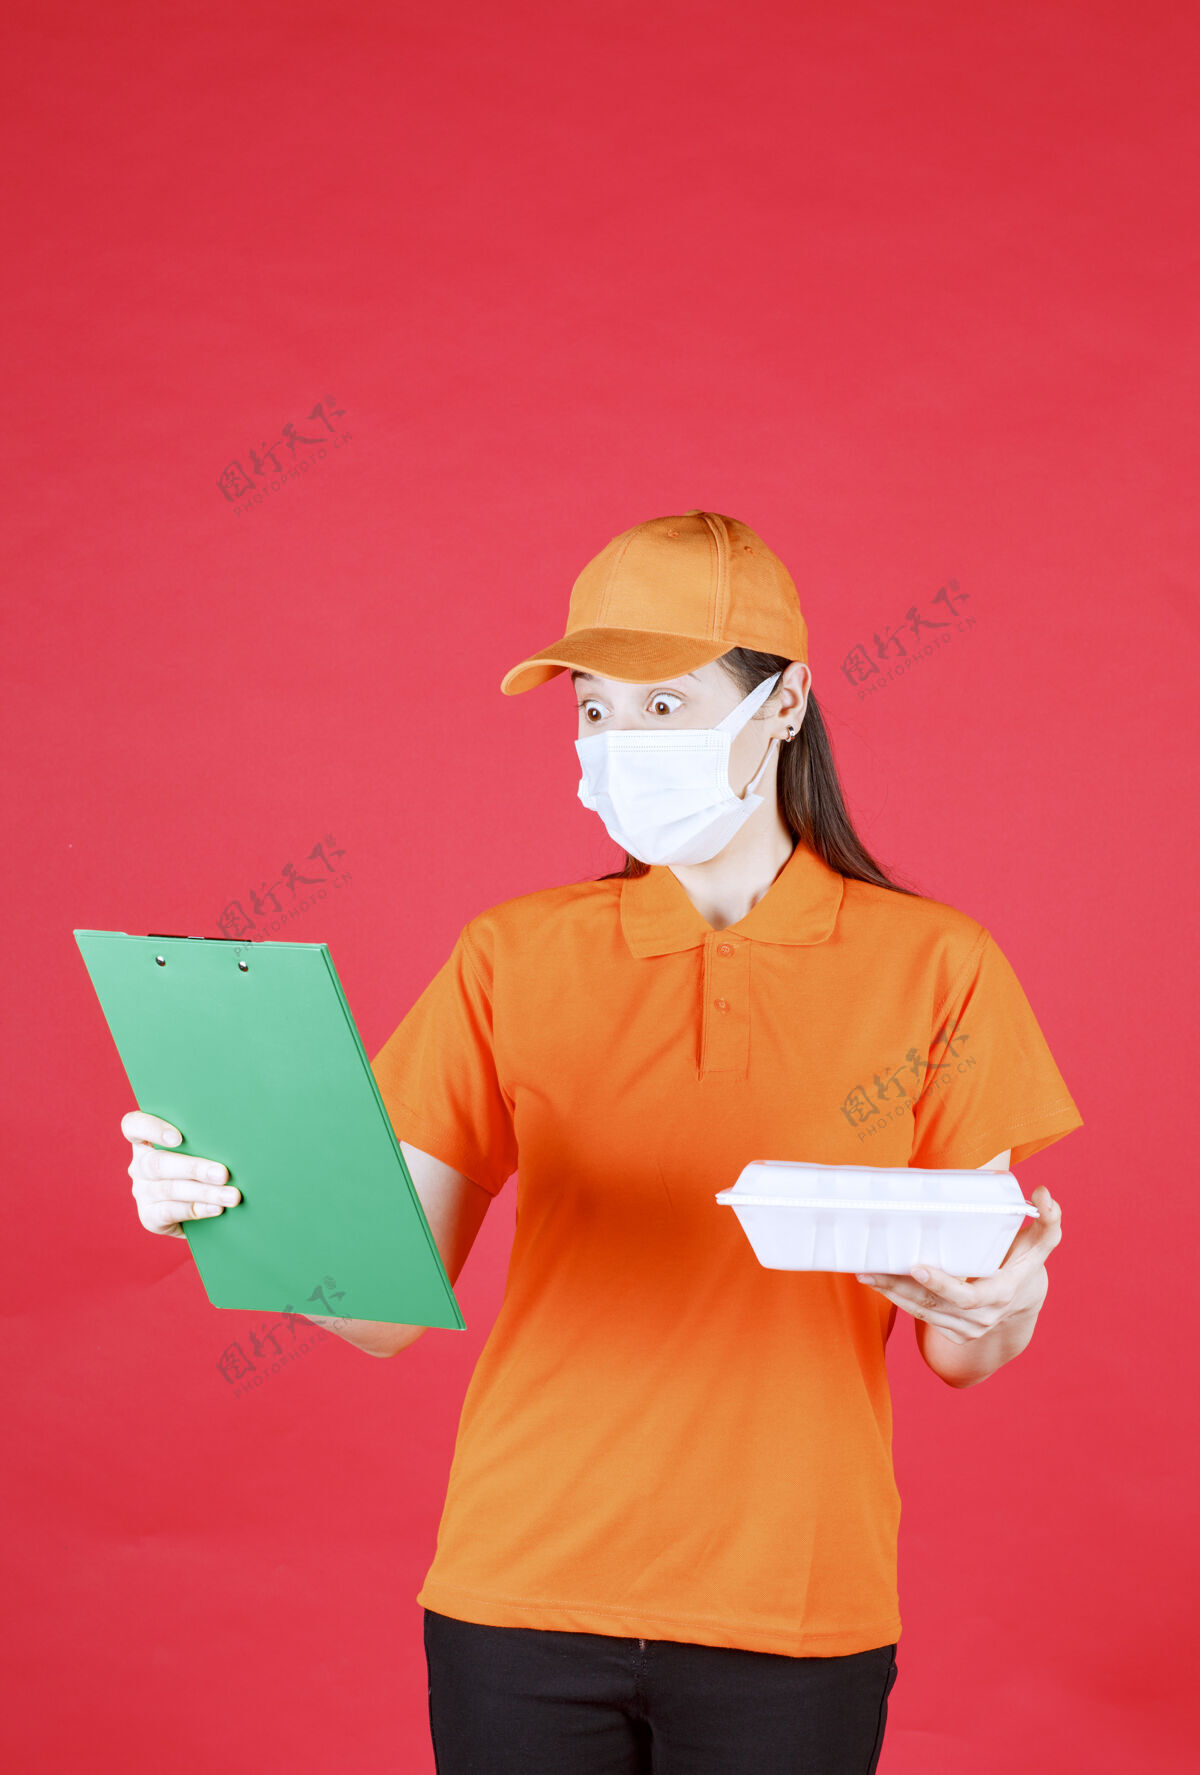 阅读身着橙色制服和口罩的女服务人员手持外卖食品包 检查绿色文件夹年轻人制服送货员